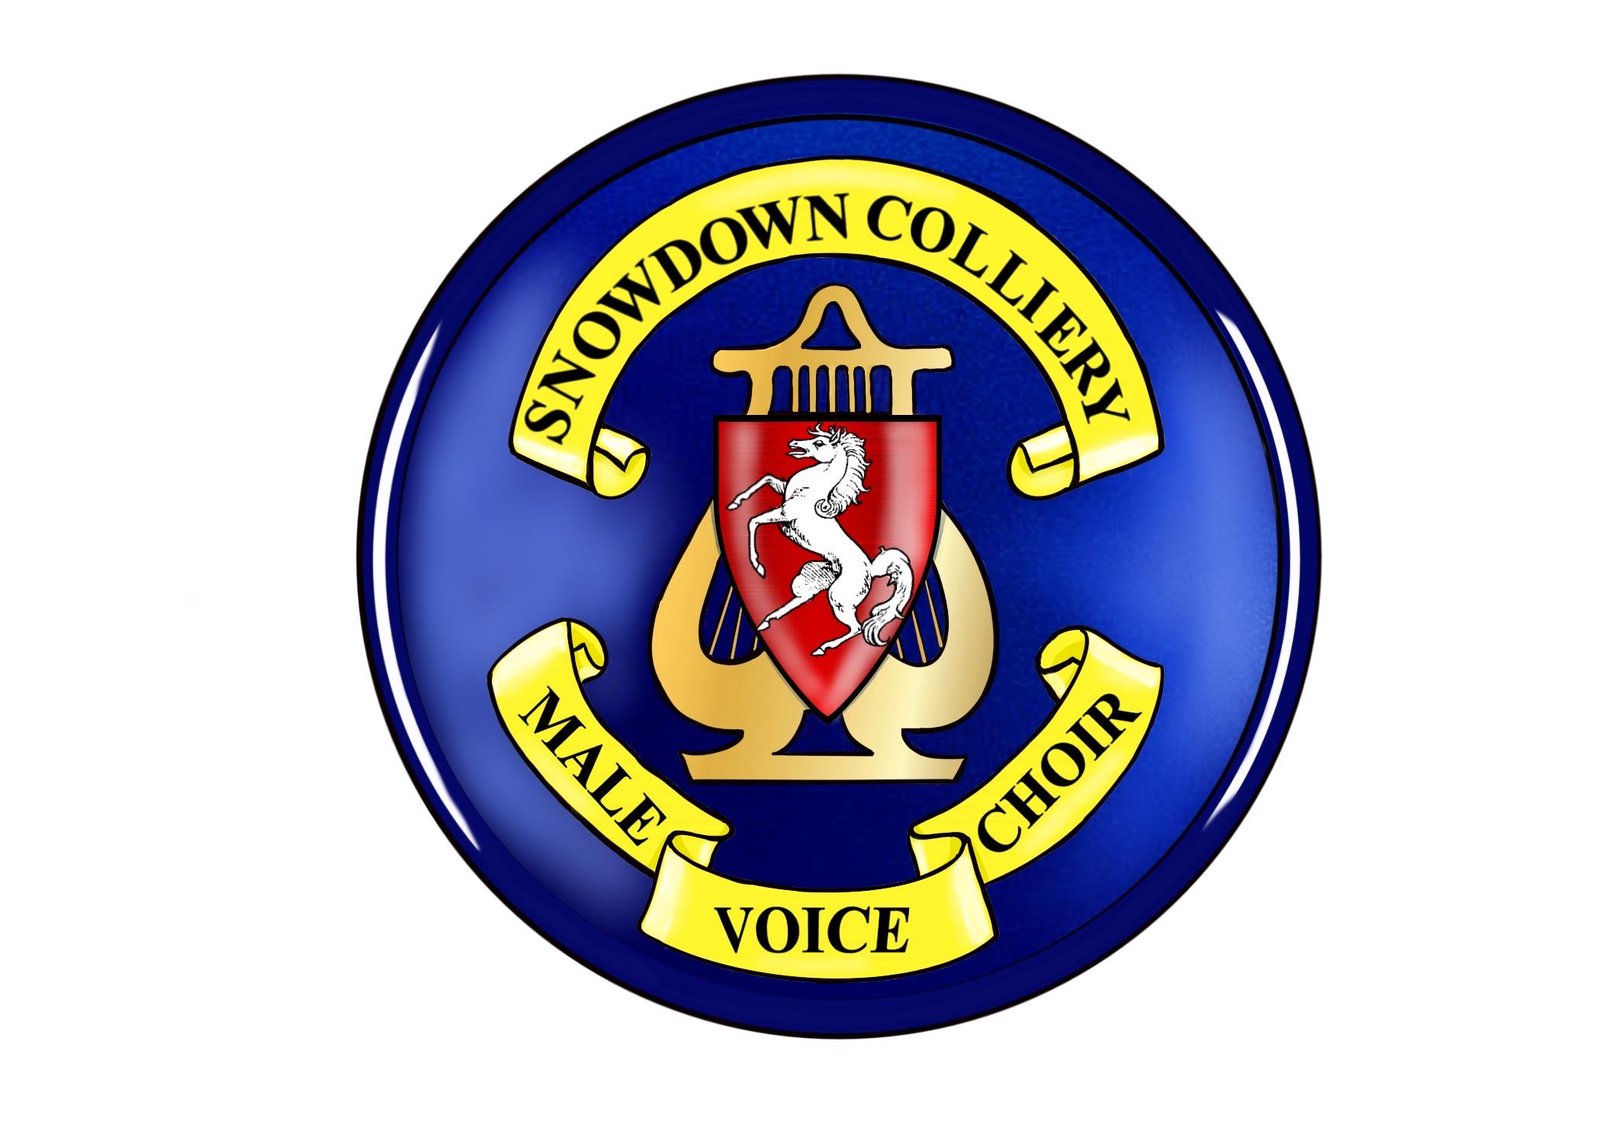 Snowdown Colliery Welfare Male Voice Choir Badge